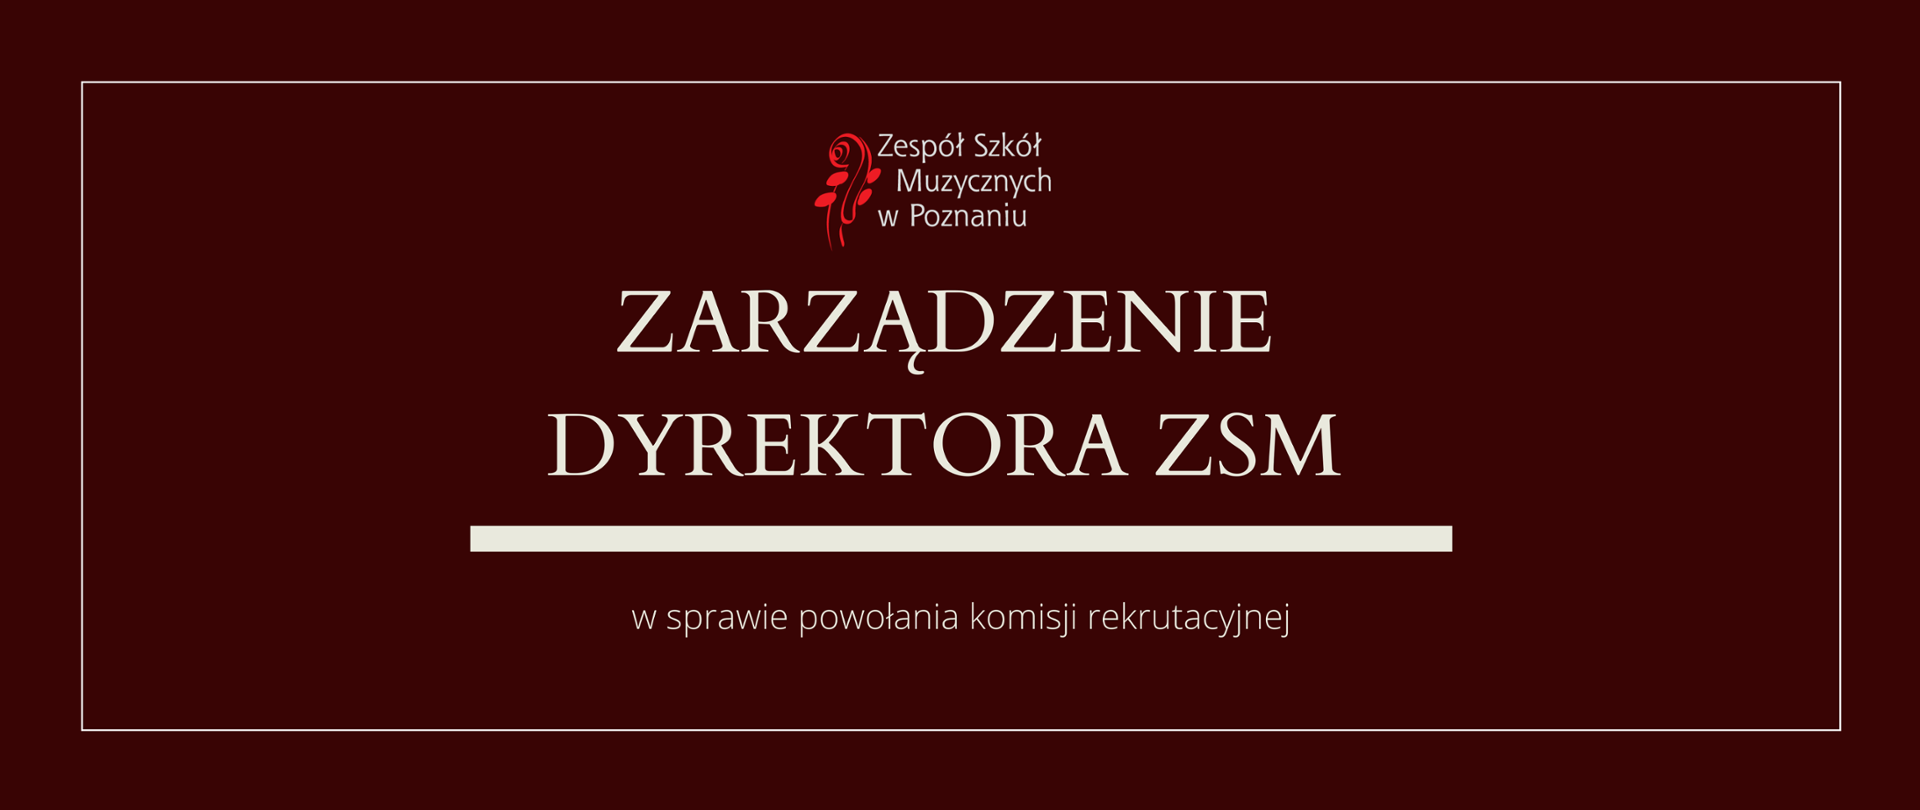 Bordowa grafika z logo ZSM i tekstem /"ZARZĄDZENIE DYREKTORA ZSM"/ poniżej biała gruba linia, niżej tekst /"w sprawie powołania komisji rekrutacyjnej/